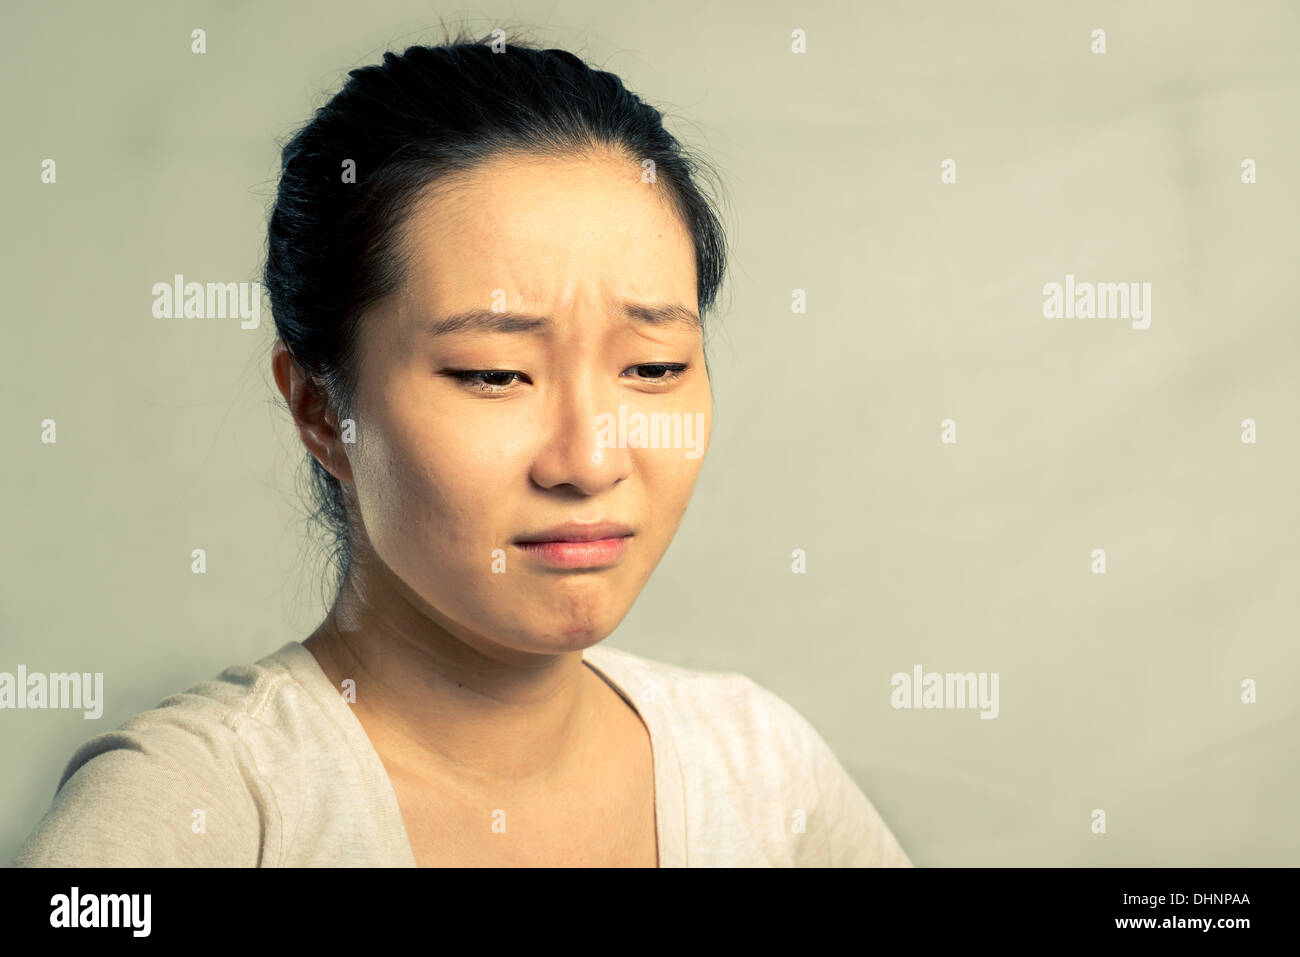 Ritratto di giovane donna che piange disperatamente, con tono di moda e lo sfondo Foto Stock